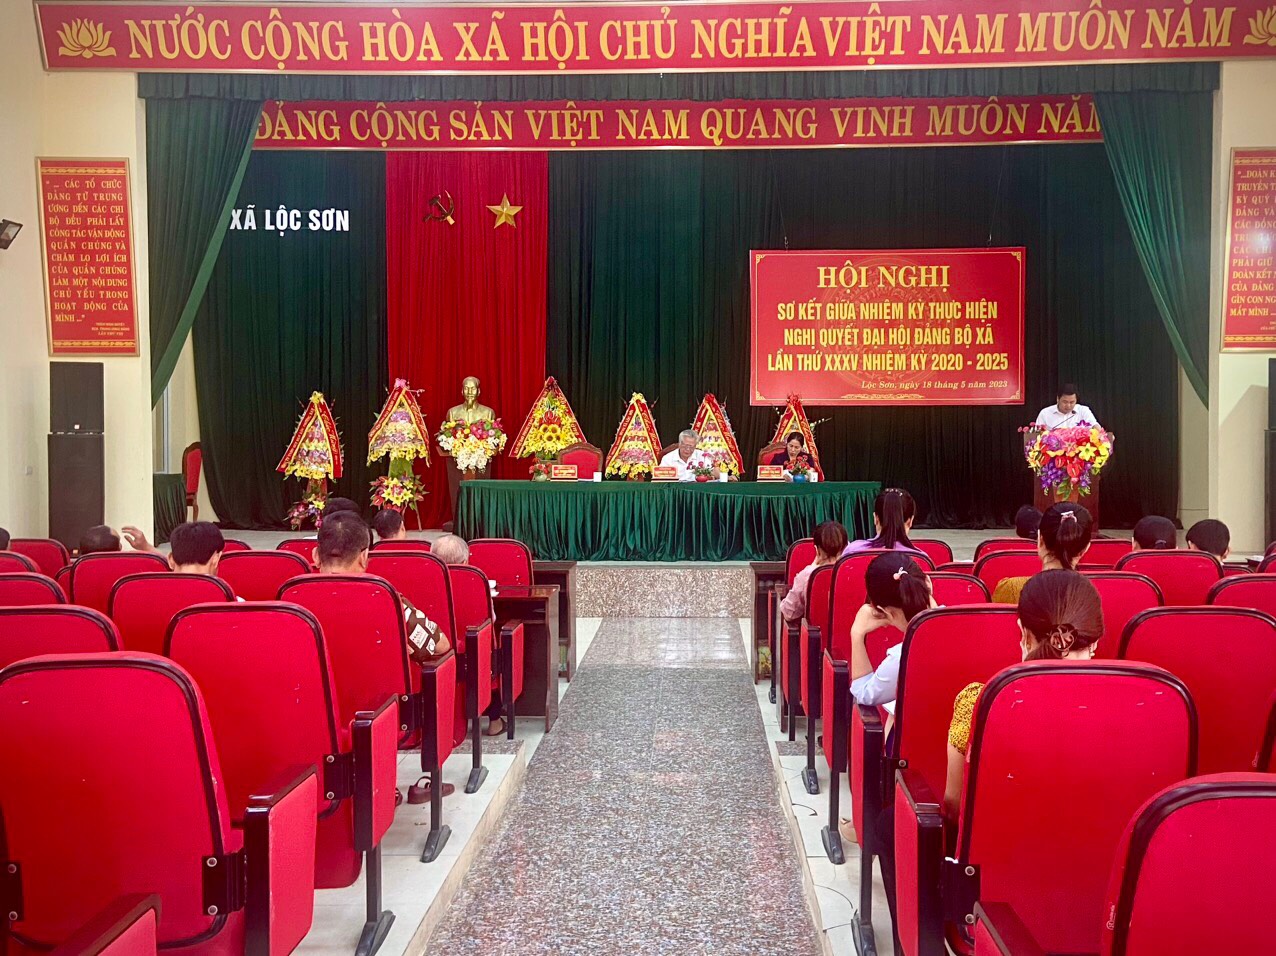 Đảng ủy xã Lộc Sơn tổ chức hội nghị sơ kết giữa nhiệm kỳ thực hiện Nghị quyết Đại hội Đảng bộ xã lần thứ XXXV, nhiệm kỳ 2020-2025